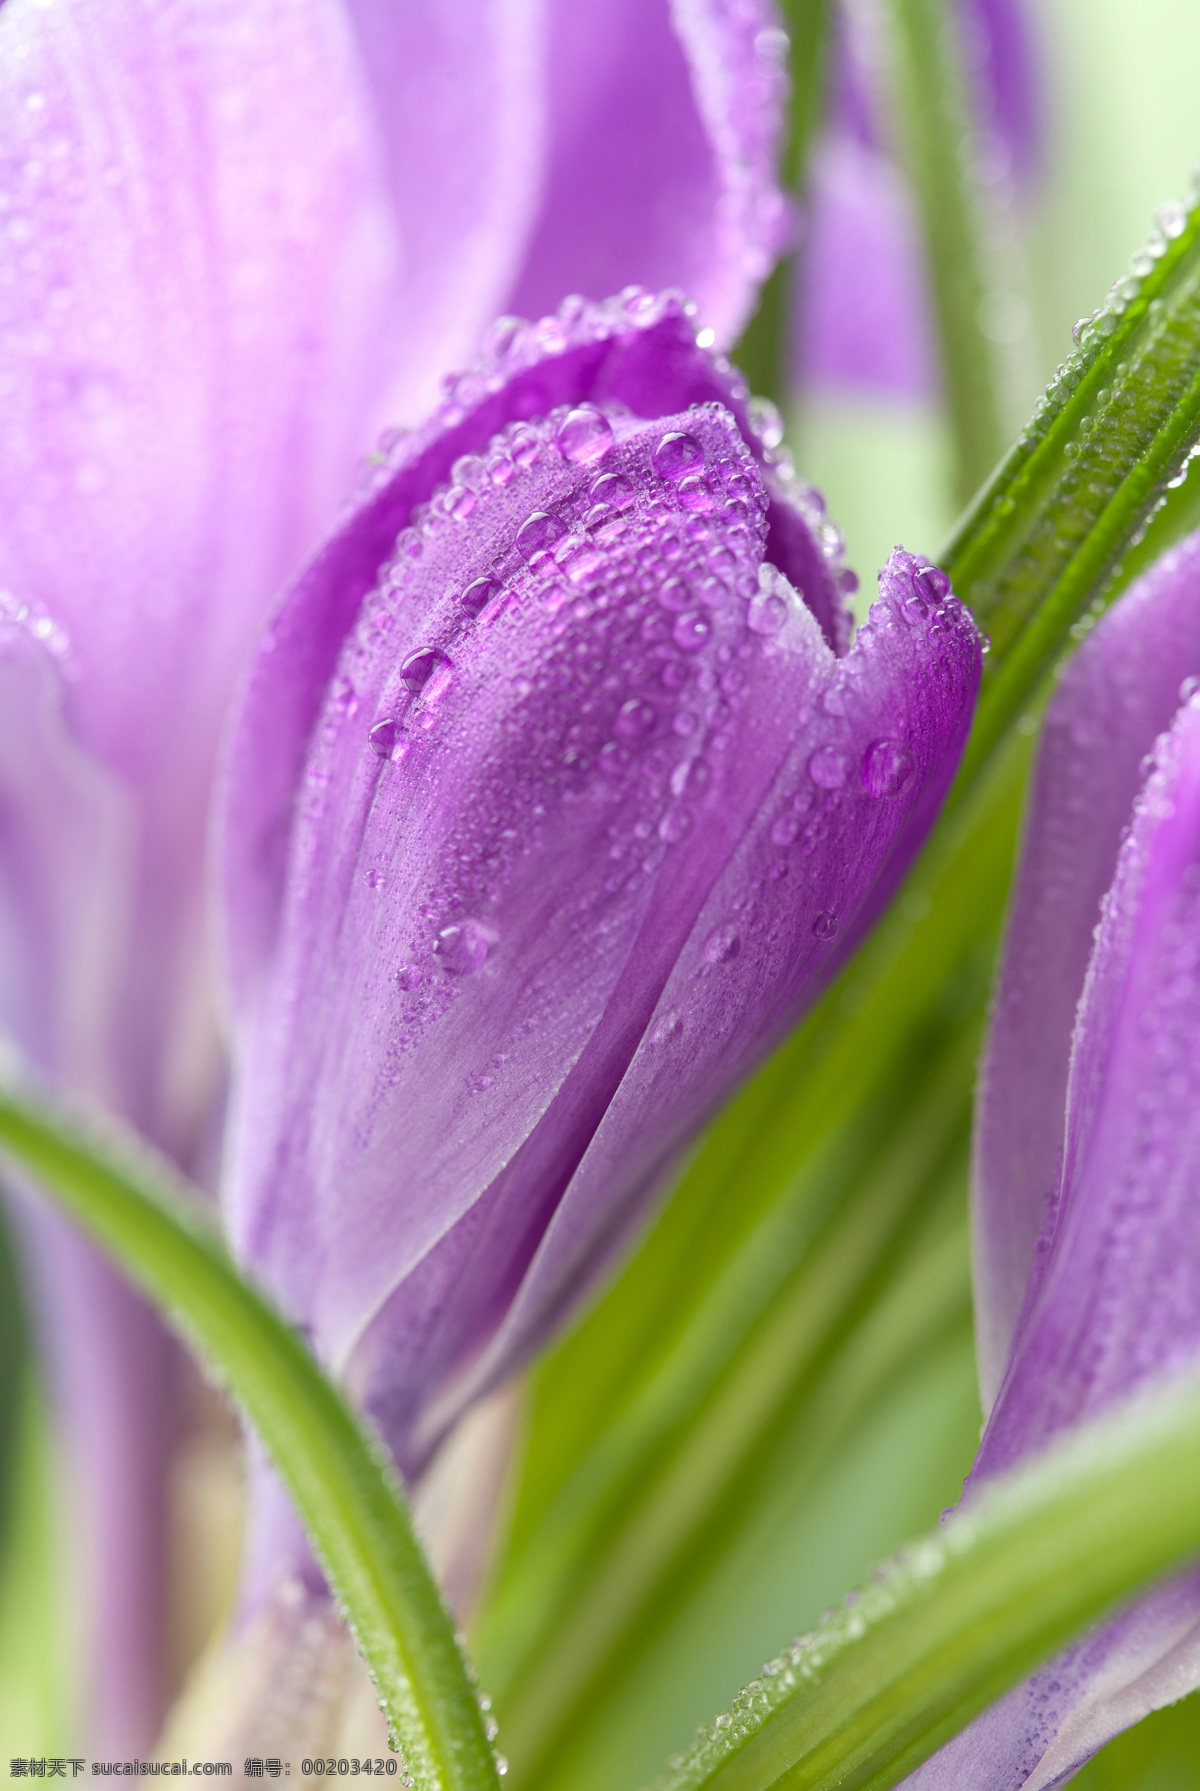 紫色 花朵 浪漫 背景 紫色花朵 露珠 浪漫背景 温馨背景 鲜花背景 花卉 美丽鲜花 梦幻背景 花草树木 生物世界